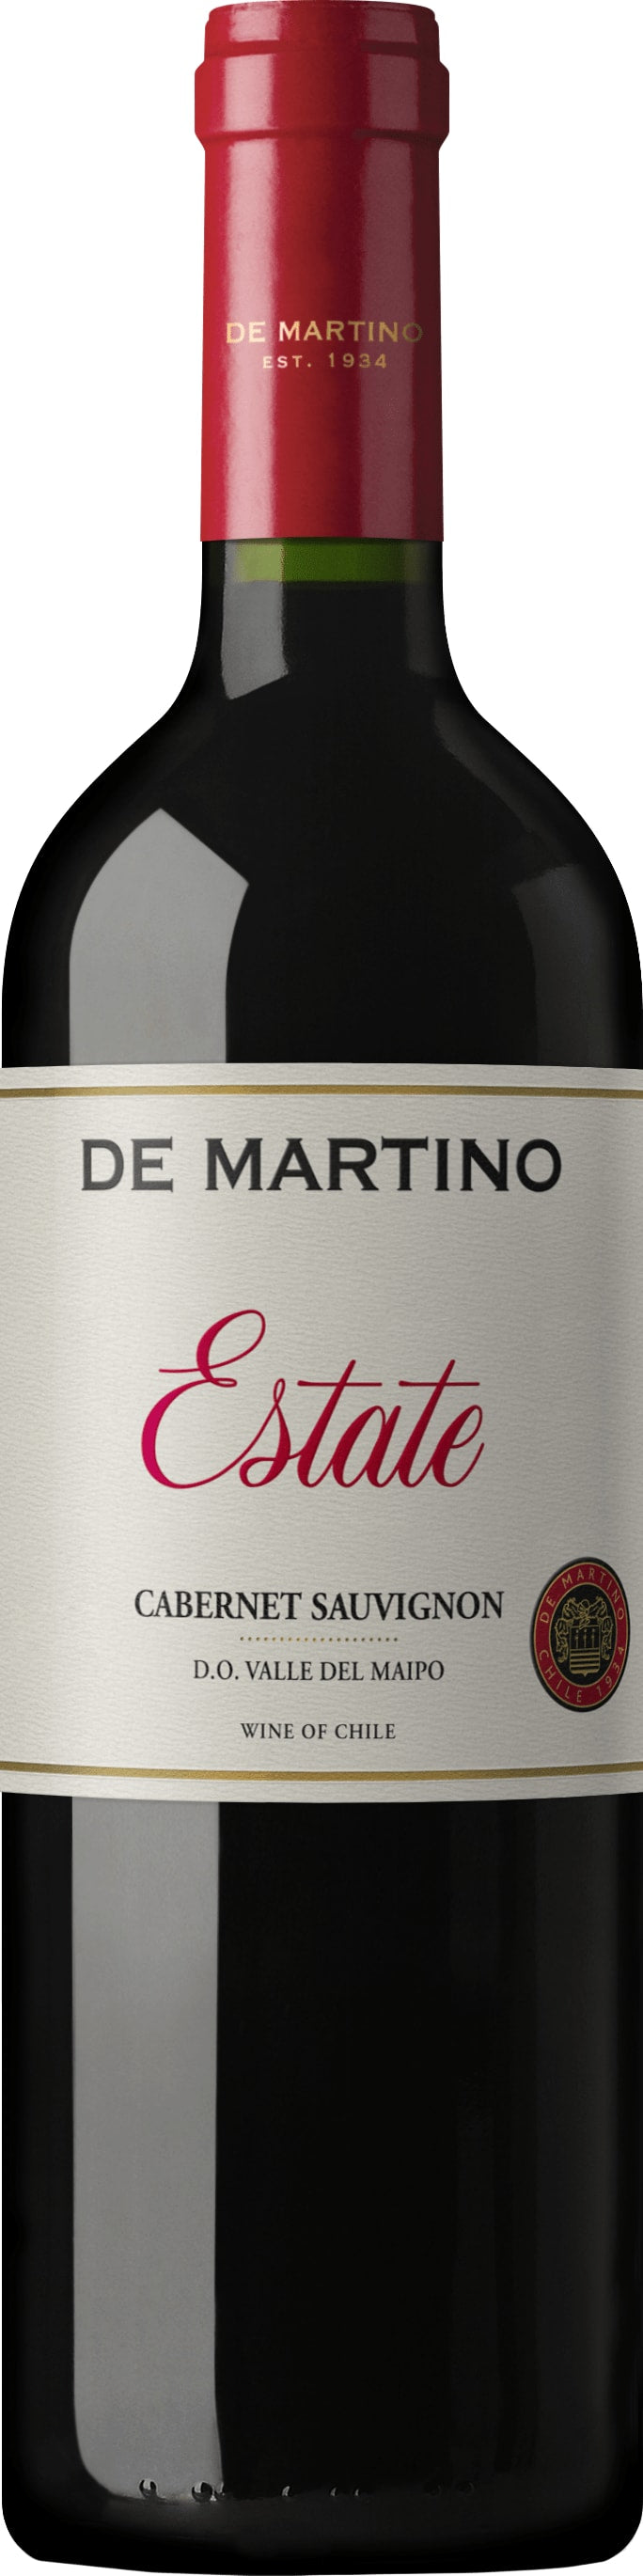 De Martino Estate Cabernet Sauvignon 2022 75cl - Buy De Martino Wines from GREAT WINES DIRECT wine shop